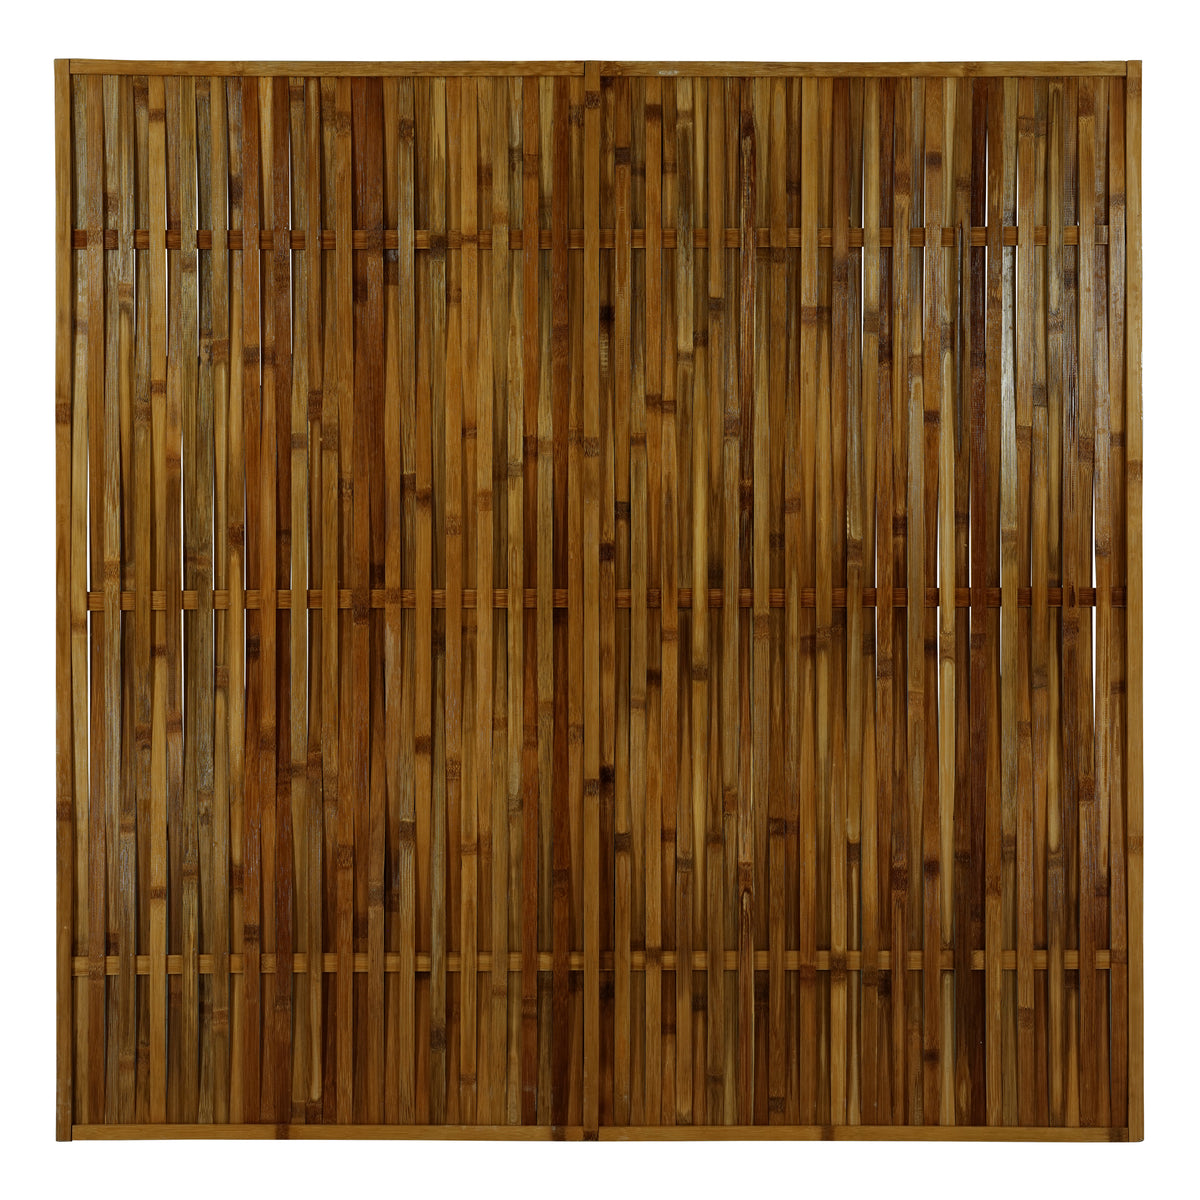 Bambusový plot opletený